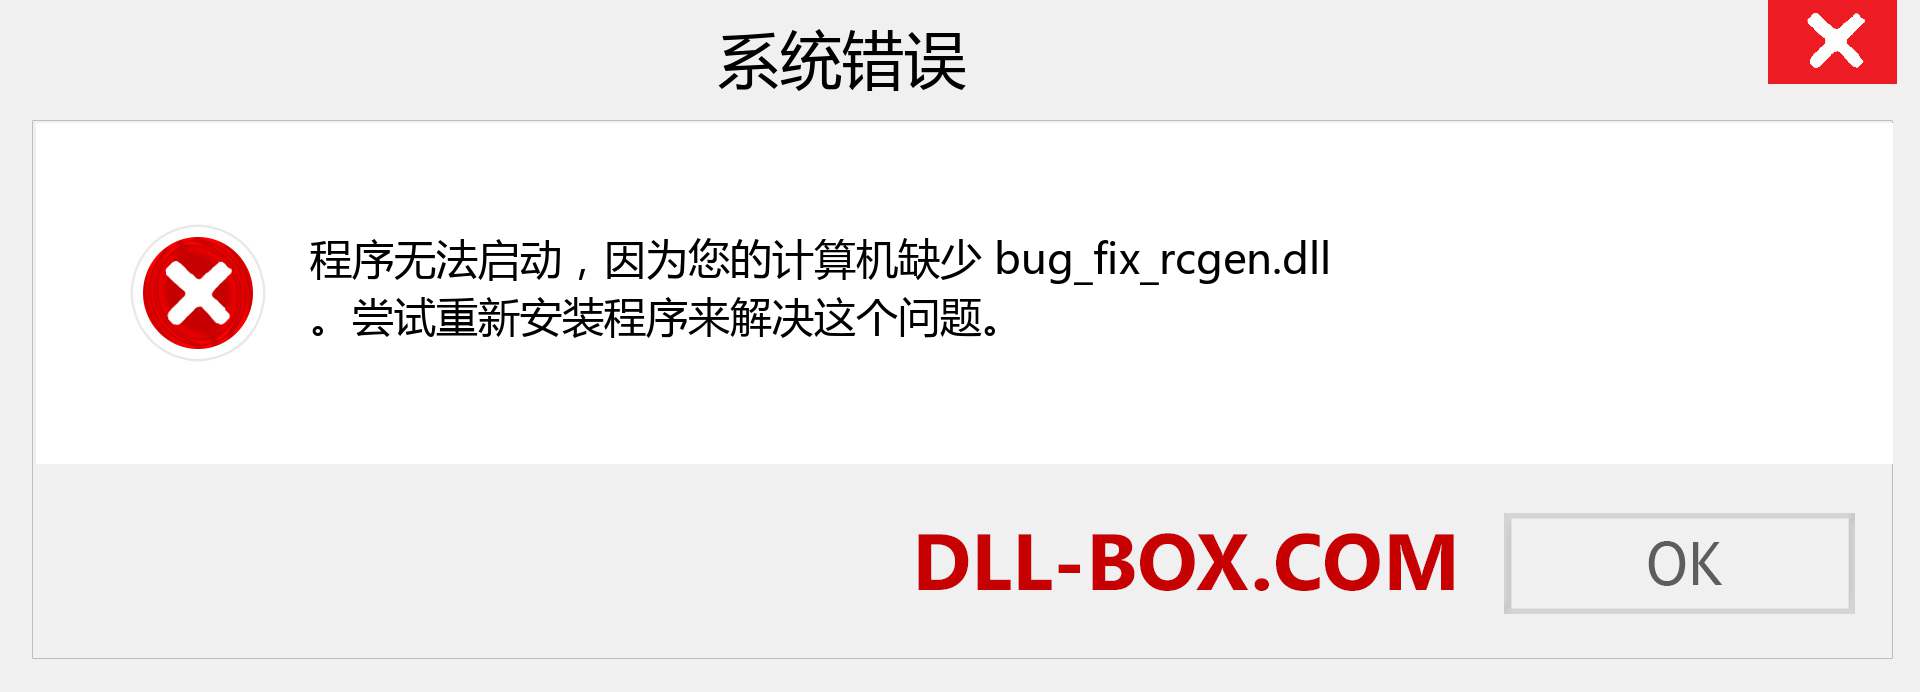 bug_fix_rcgen.dll 文件丢失？。 适用于 Windows 7、8、10 的下载 - 修复 Windows、照片、图像上的 bug_fix_rcgen dll 丢失错误